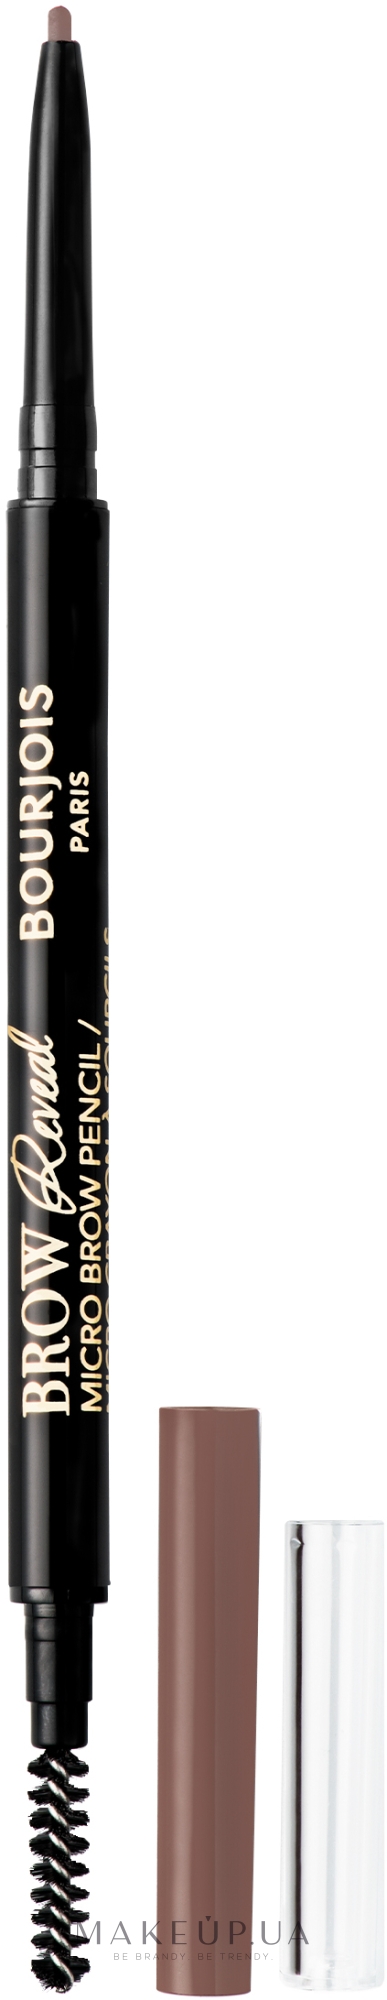 Олівець для брів - Bourjois Brow Reveal Micro Brow Pencil — фото 001 - Blond